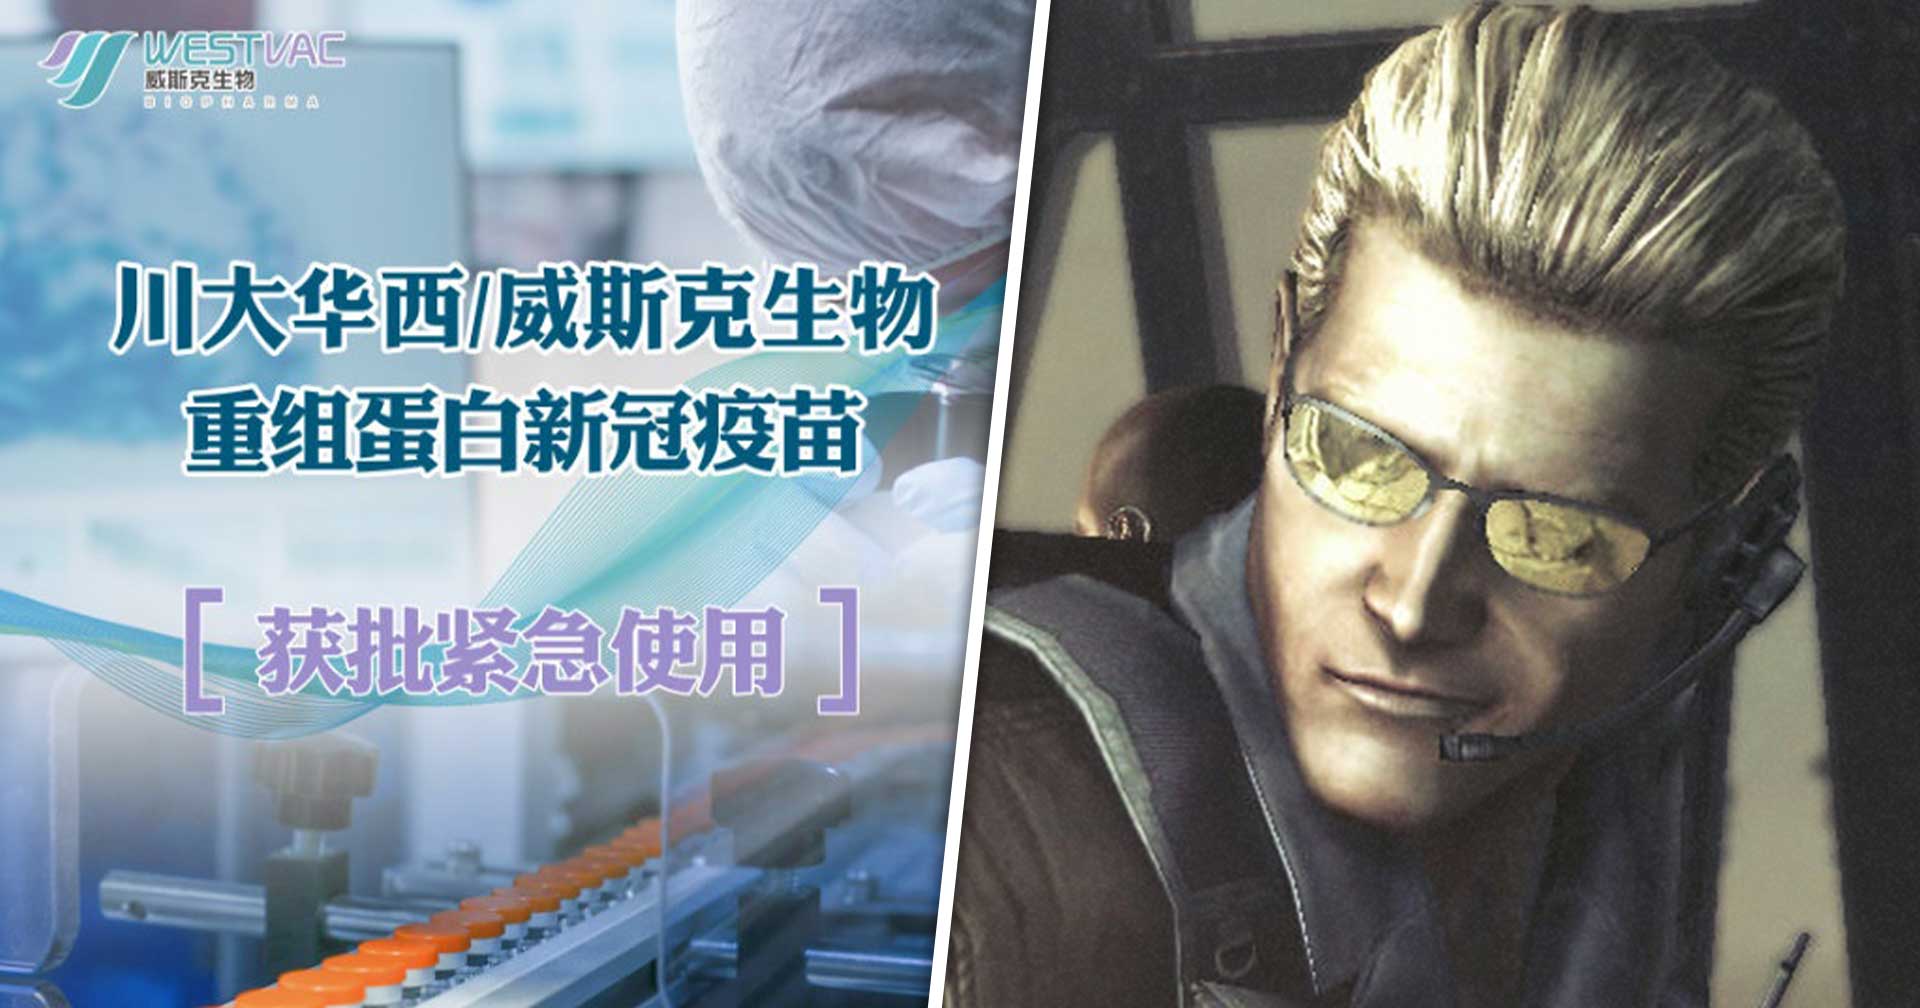 เกมเมอร์ตกใจ!! พบบริษัทชื่อ Wesker Biopharma ผลิตวัคซีน COVID-19 ฉุกเฉินให้กับจีน